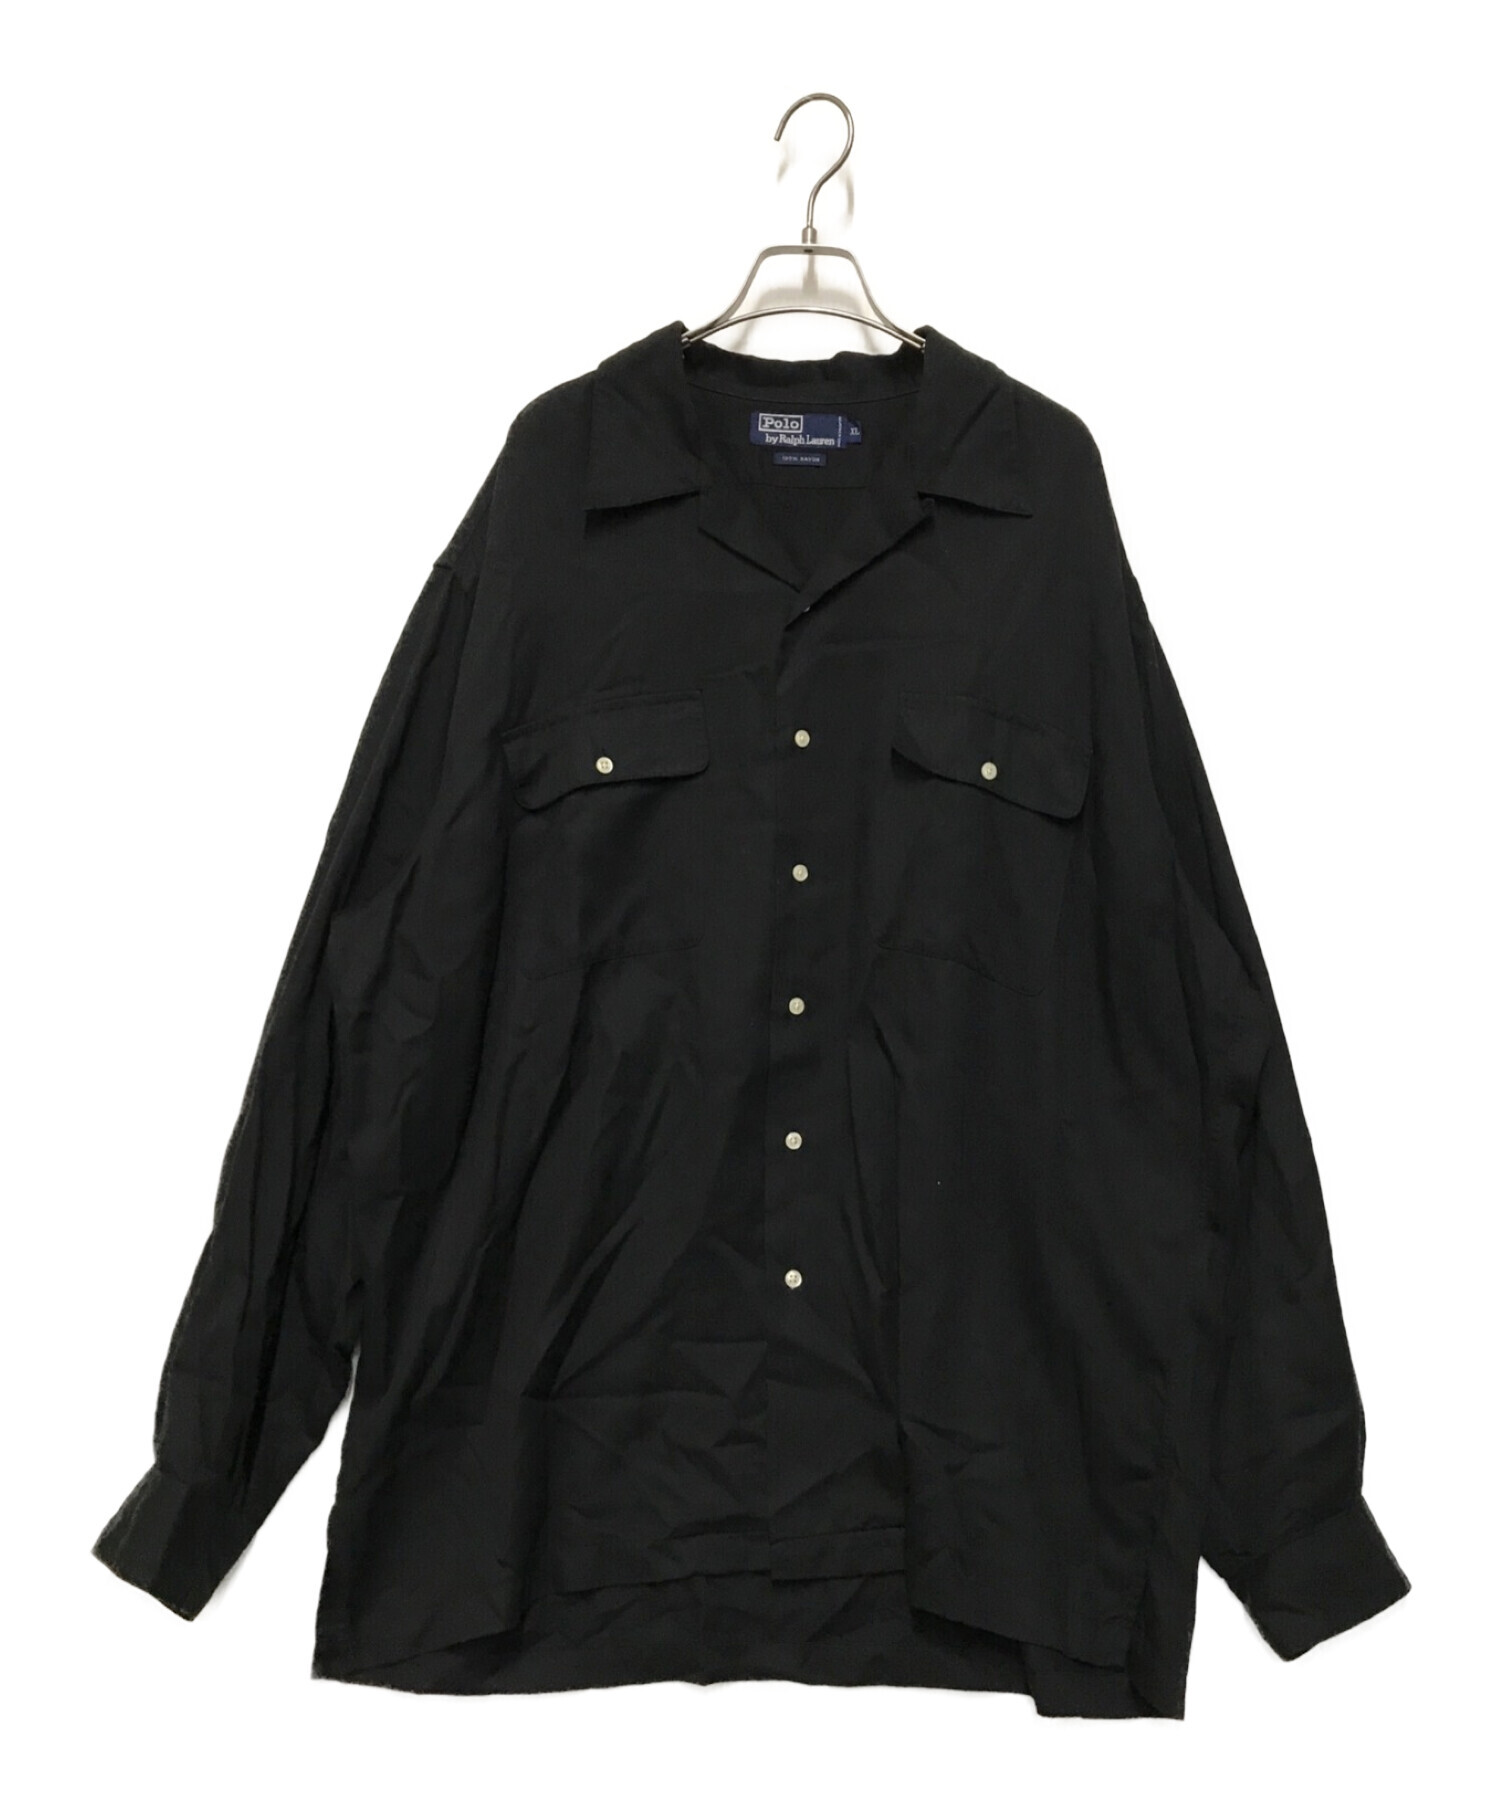 POLO RALPH LAUREN (ポロ・ラルフローレン) レーヨンオープンカラーシャツ ブラック サイズ:XL